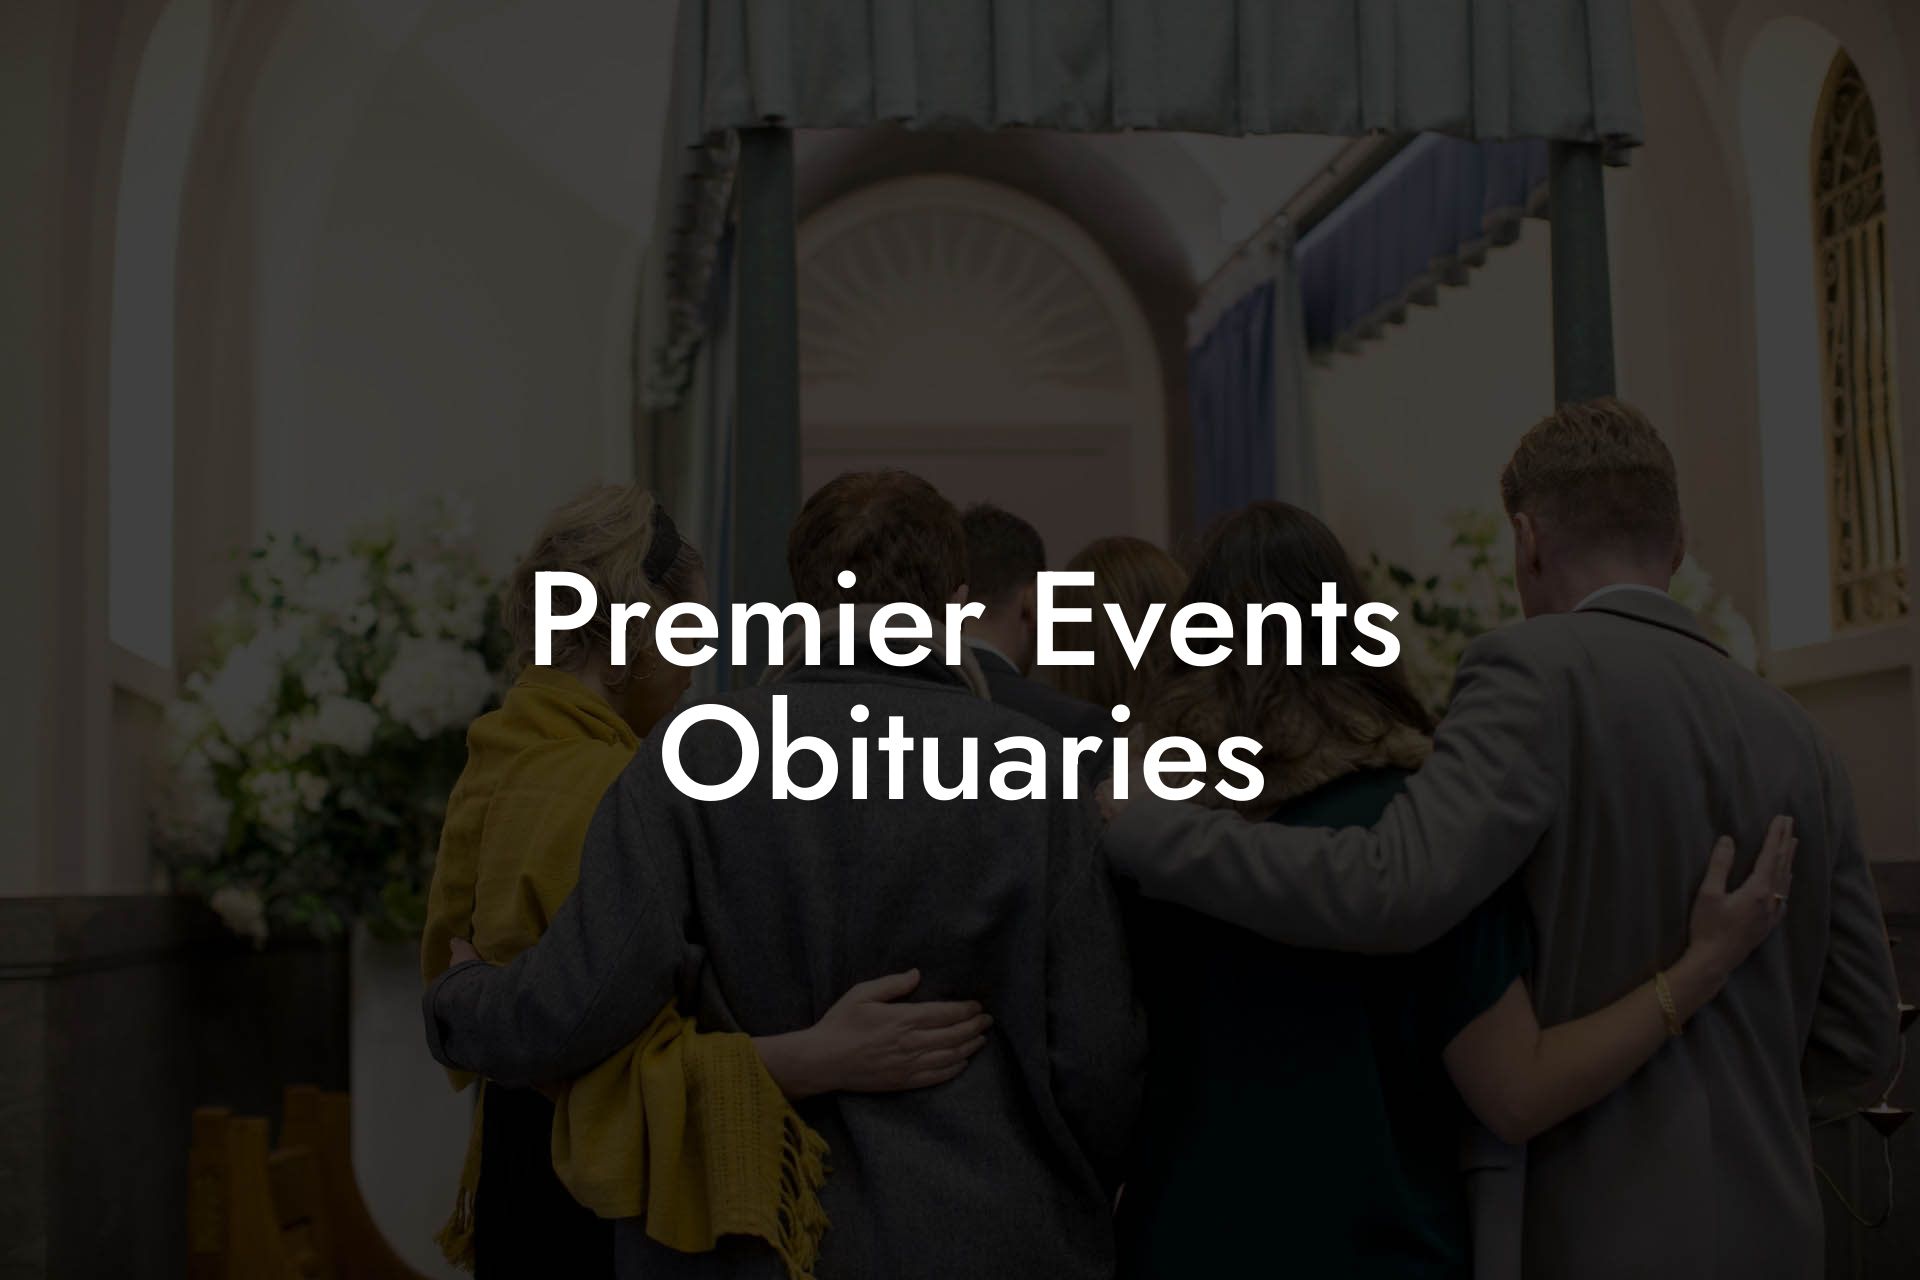 Premier Events Obituaries